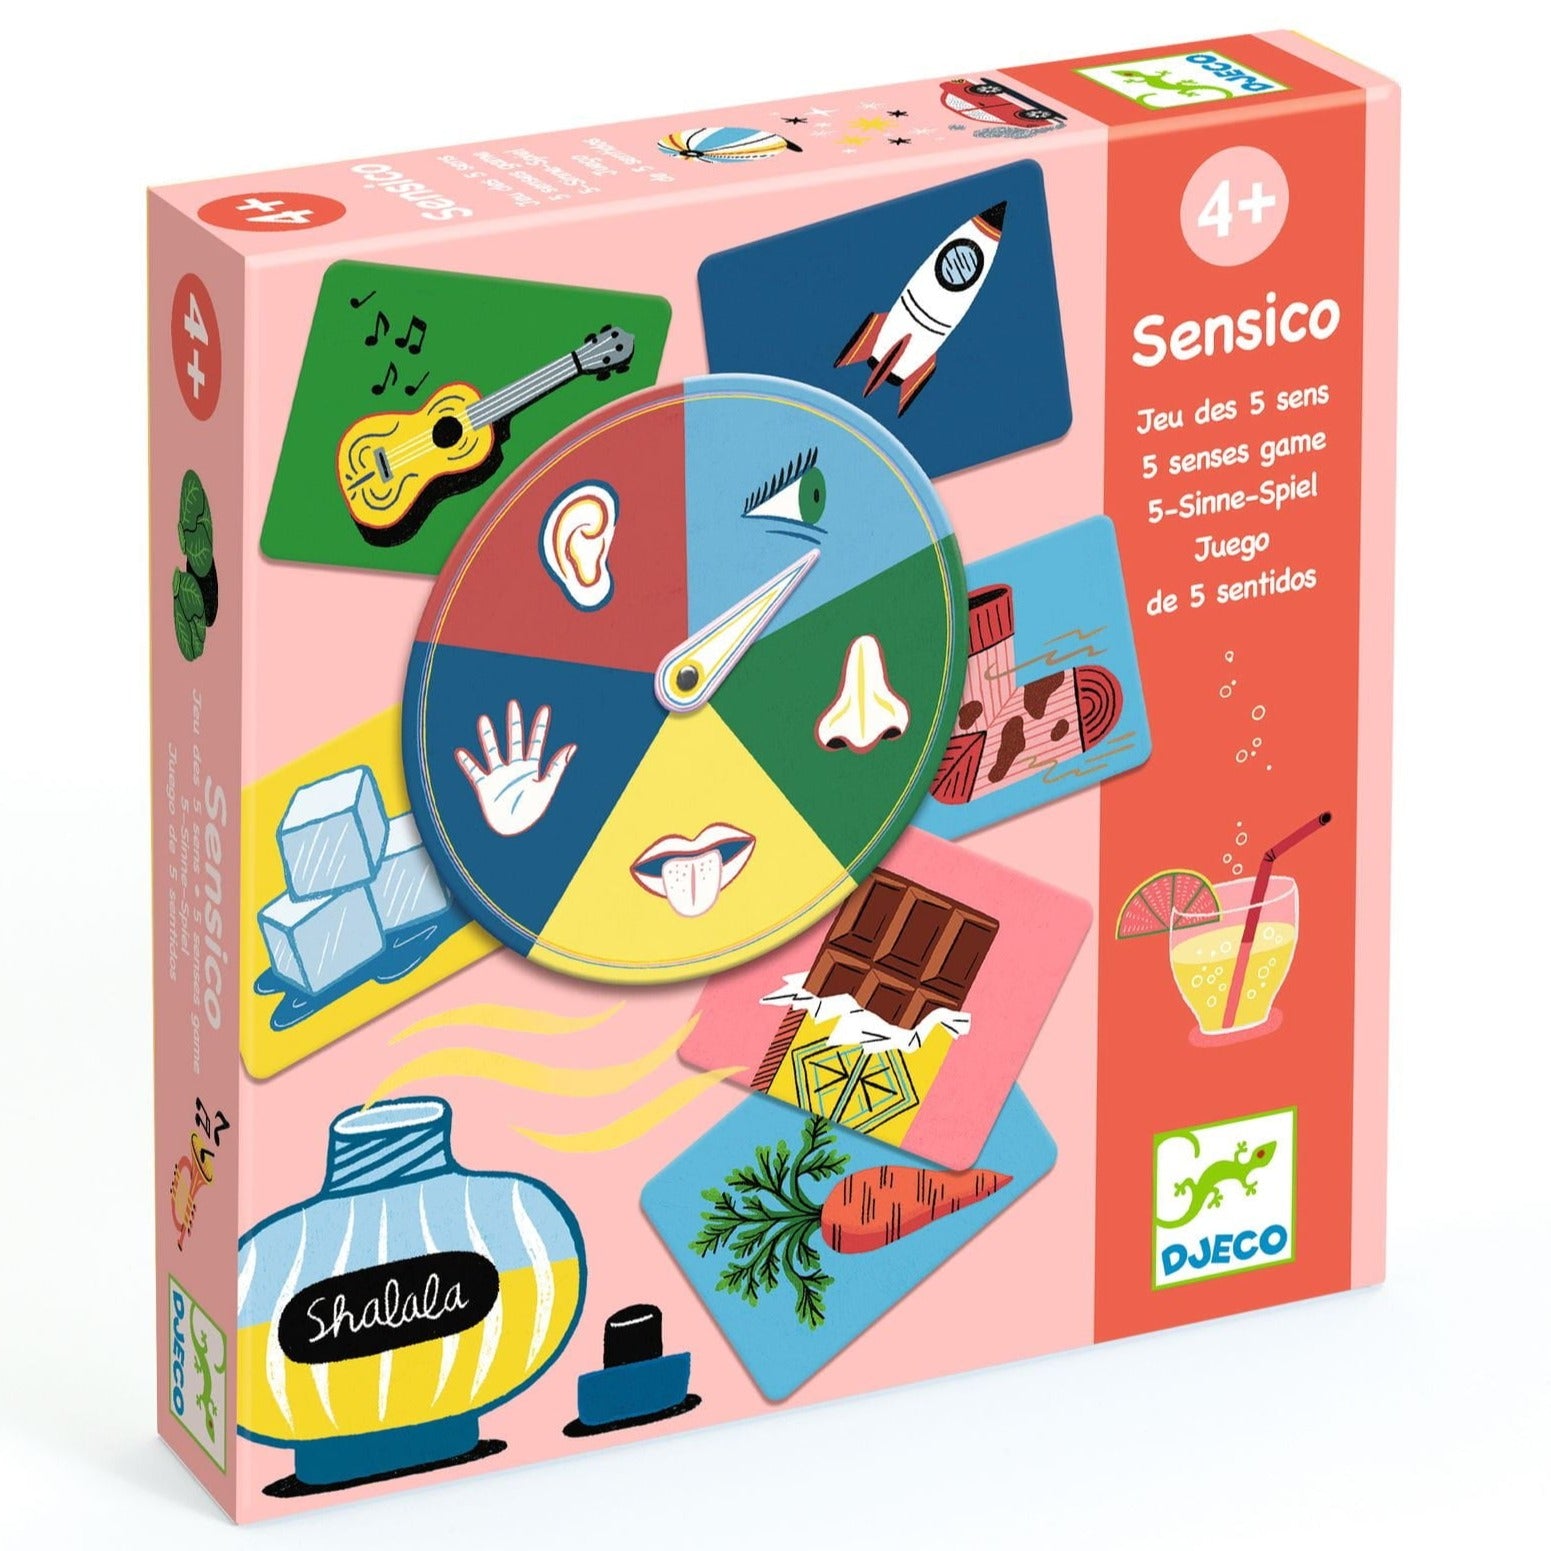 Djeco: Sensico board game